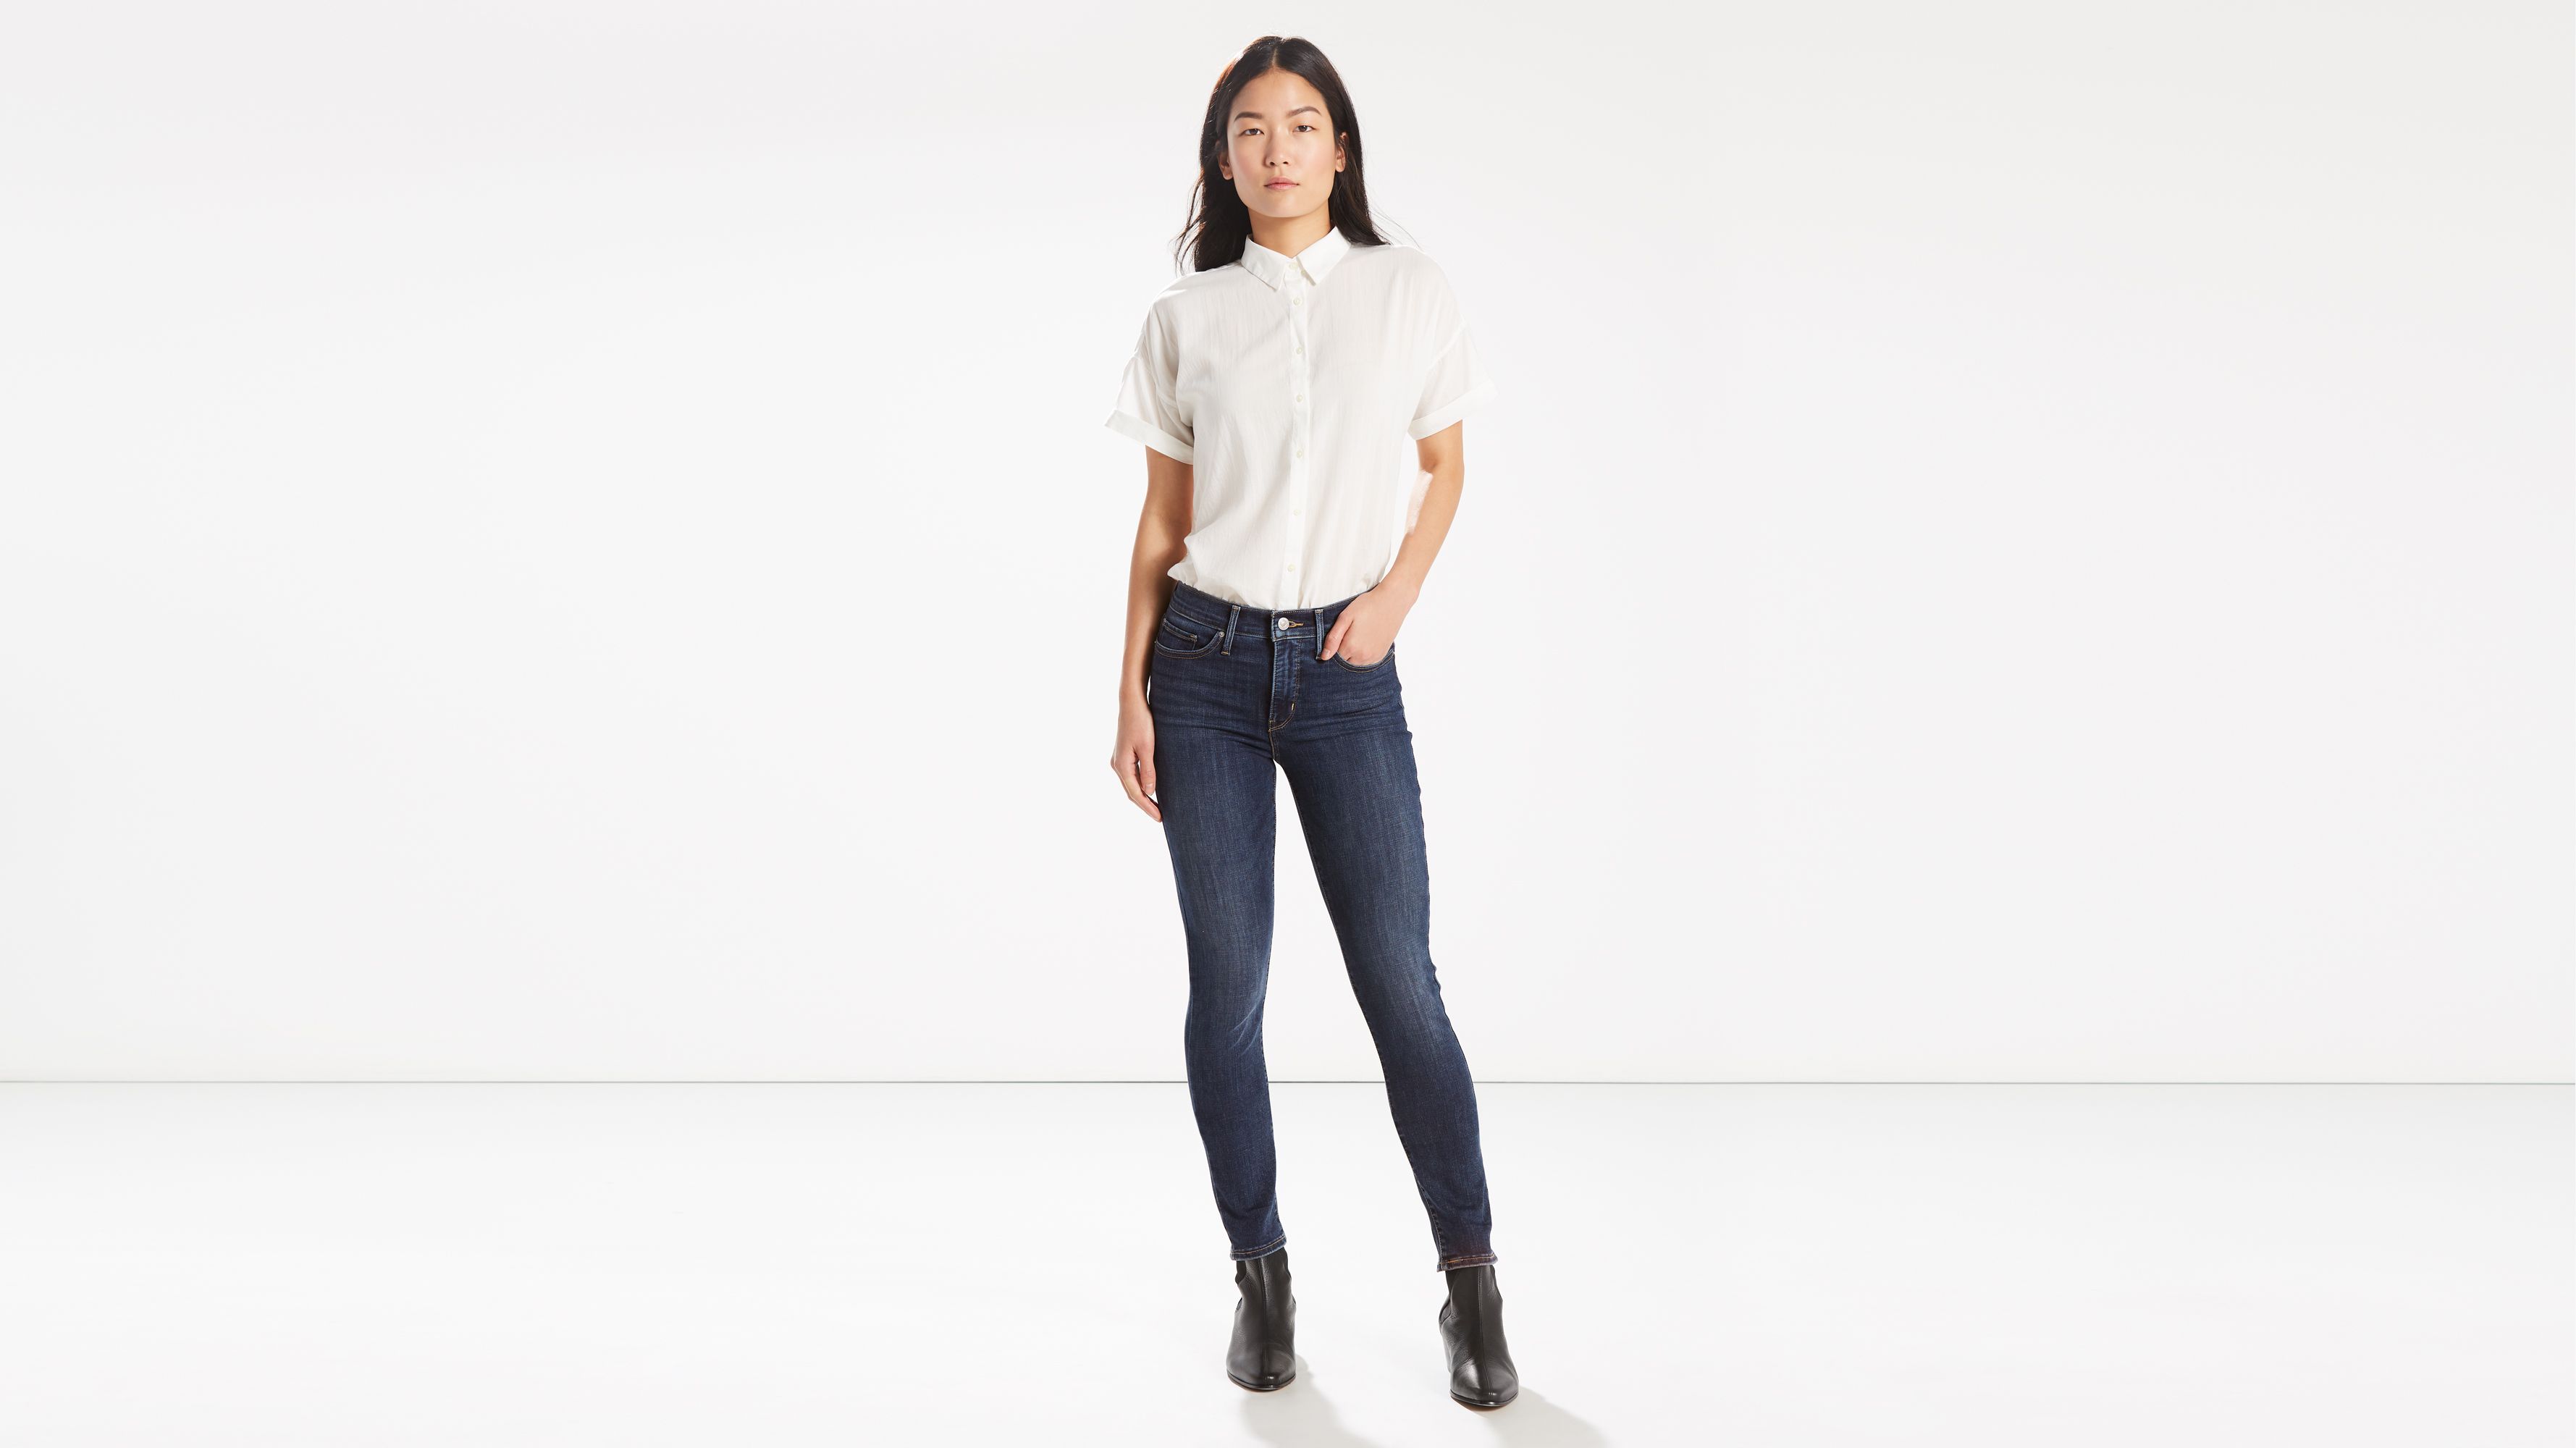 Women’s Jeans - Shop All Levi's® Women's Jeans | Levi's® US